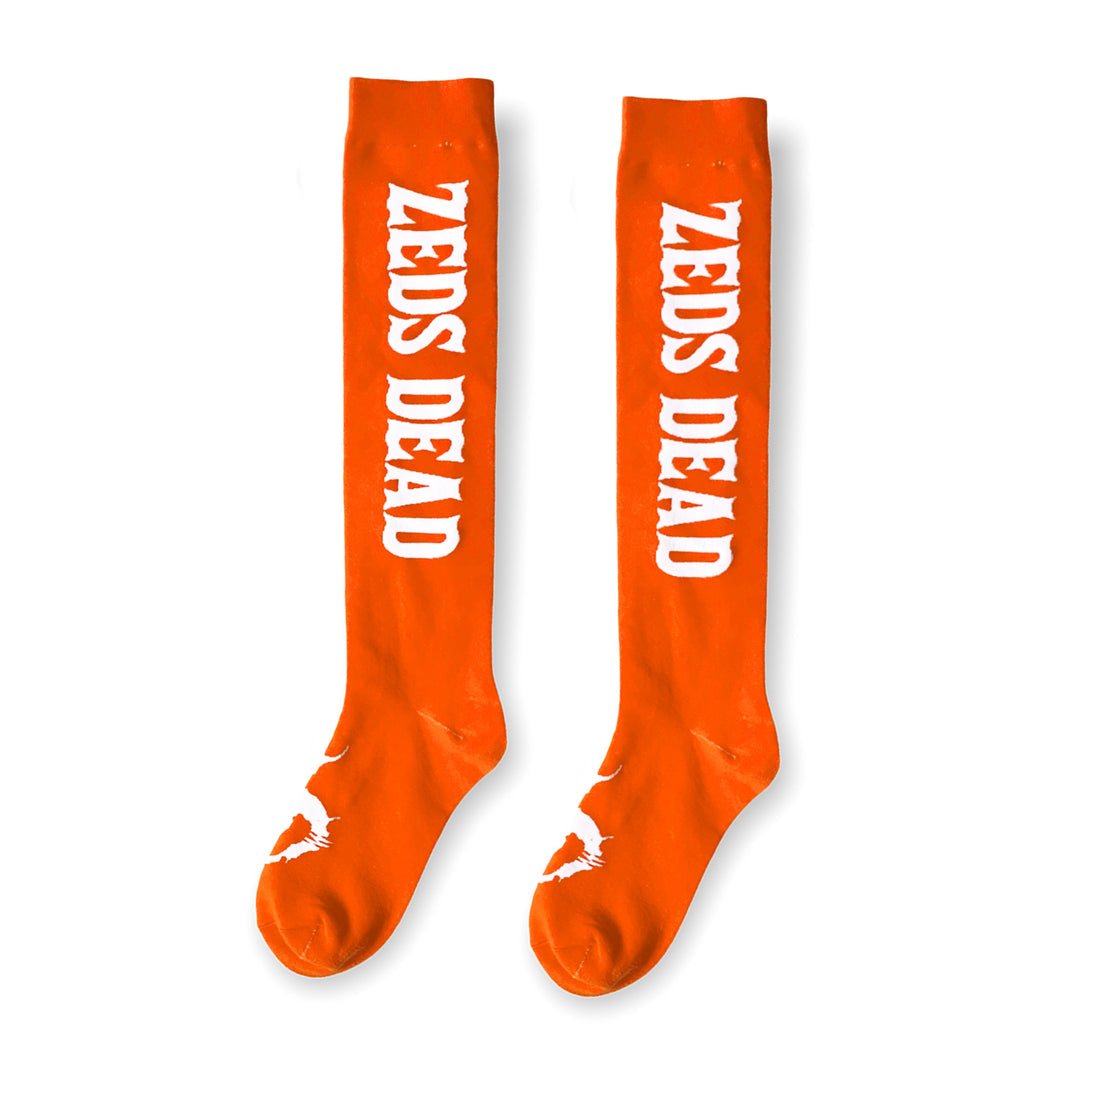 Zeds Dead - Clazzic - Knee High Socks - Orange